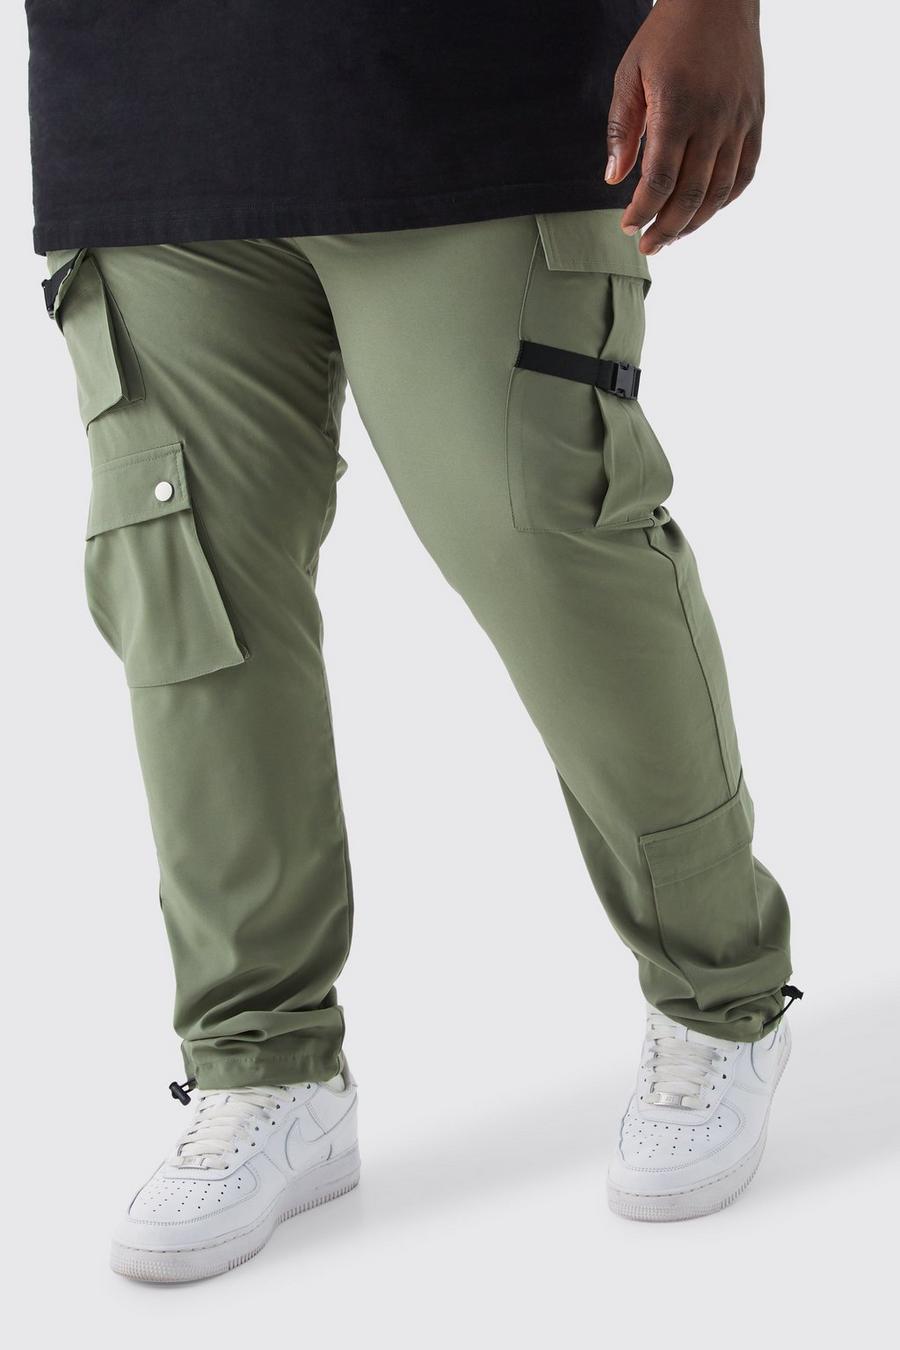 Pantaloni Plus Size Skinny Fit con tasche Cargo e fibbia, Olive